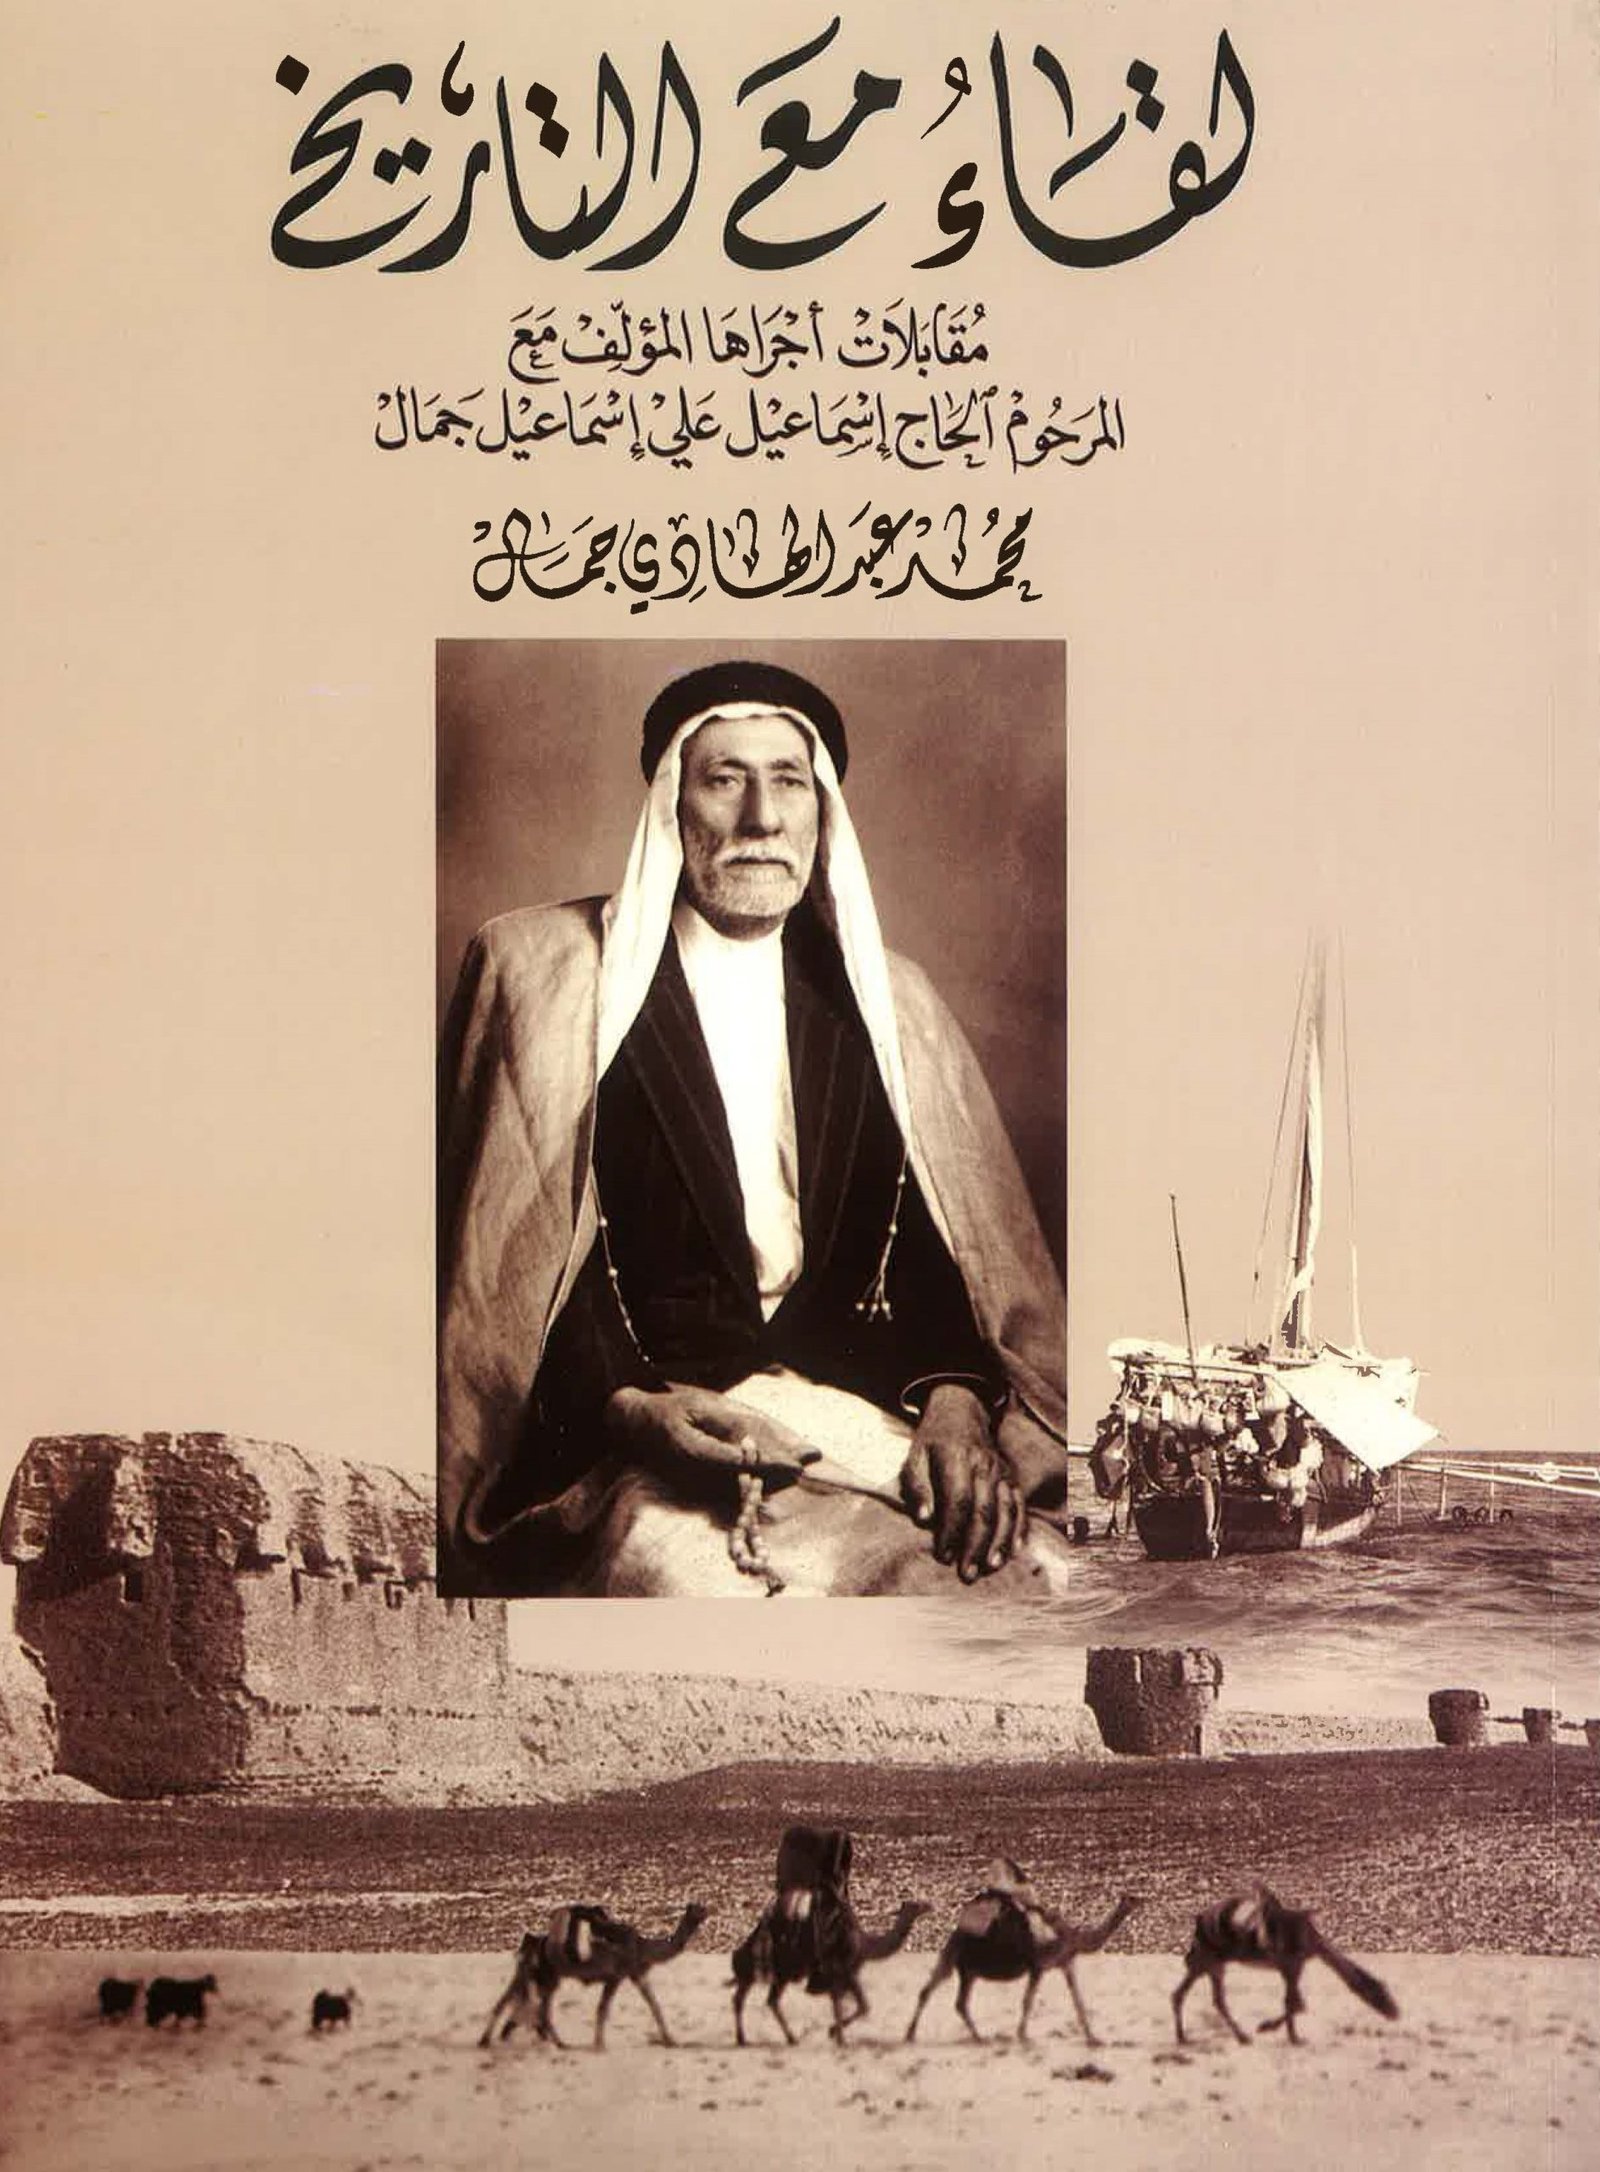 سكان منطقة وسط الكويت 1951م